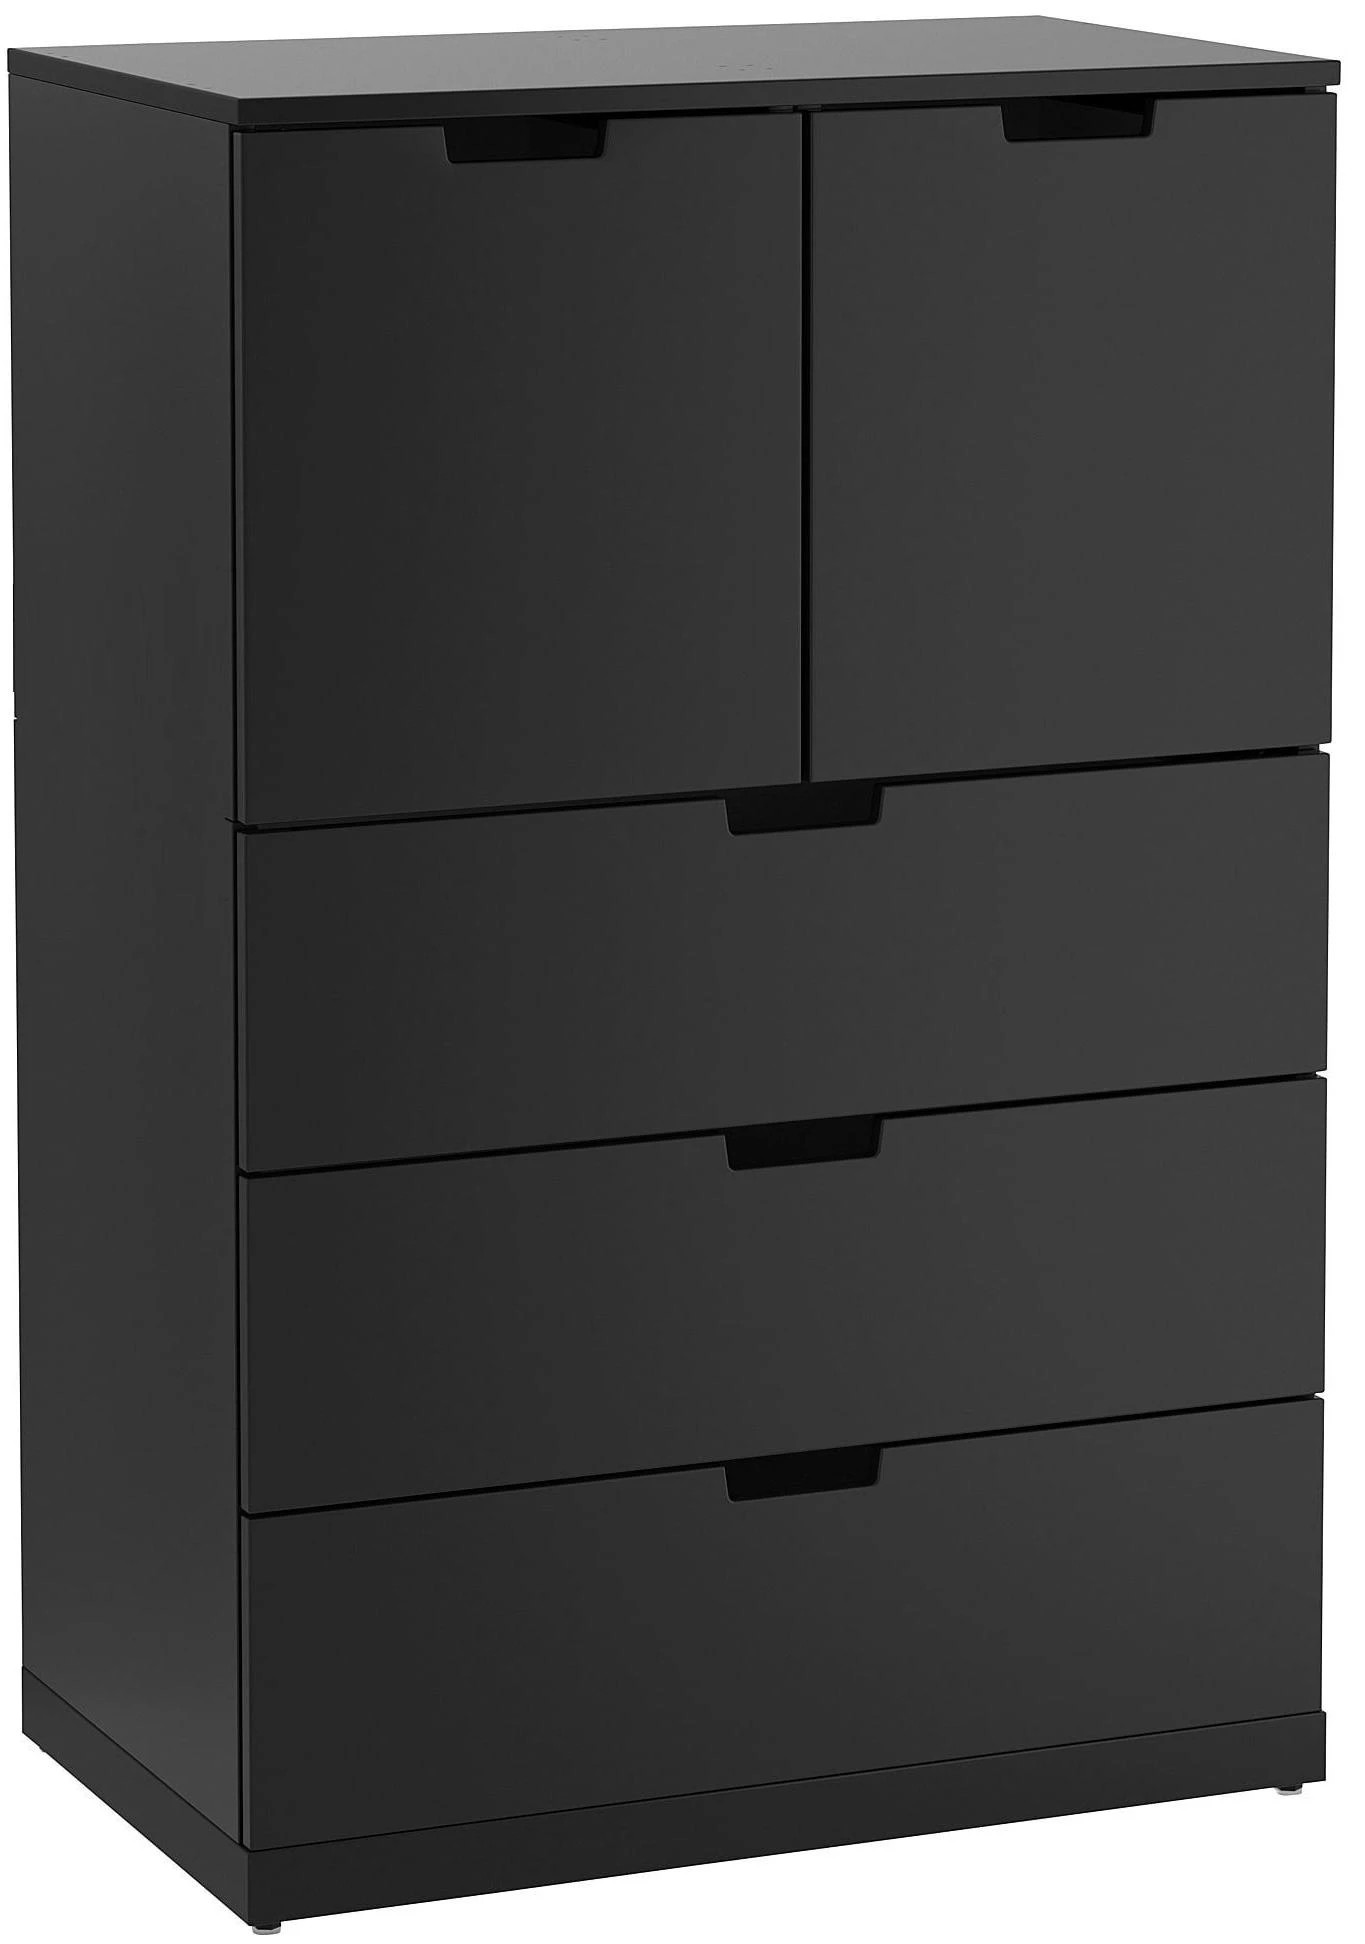 Комод с 5 ящиками - аналог IKEA  NORDLI, 60x110 см, черный